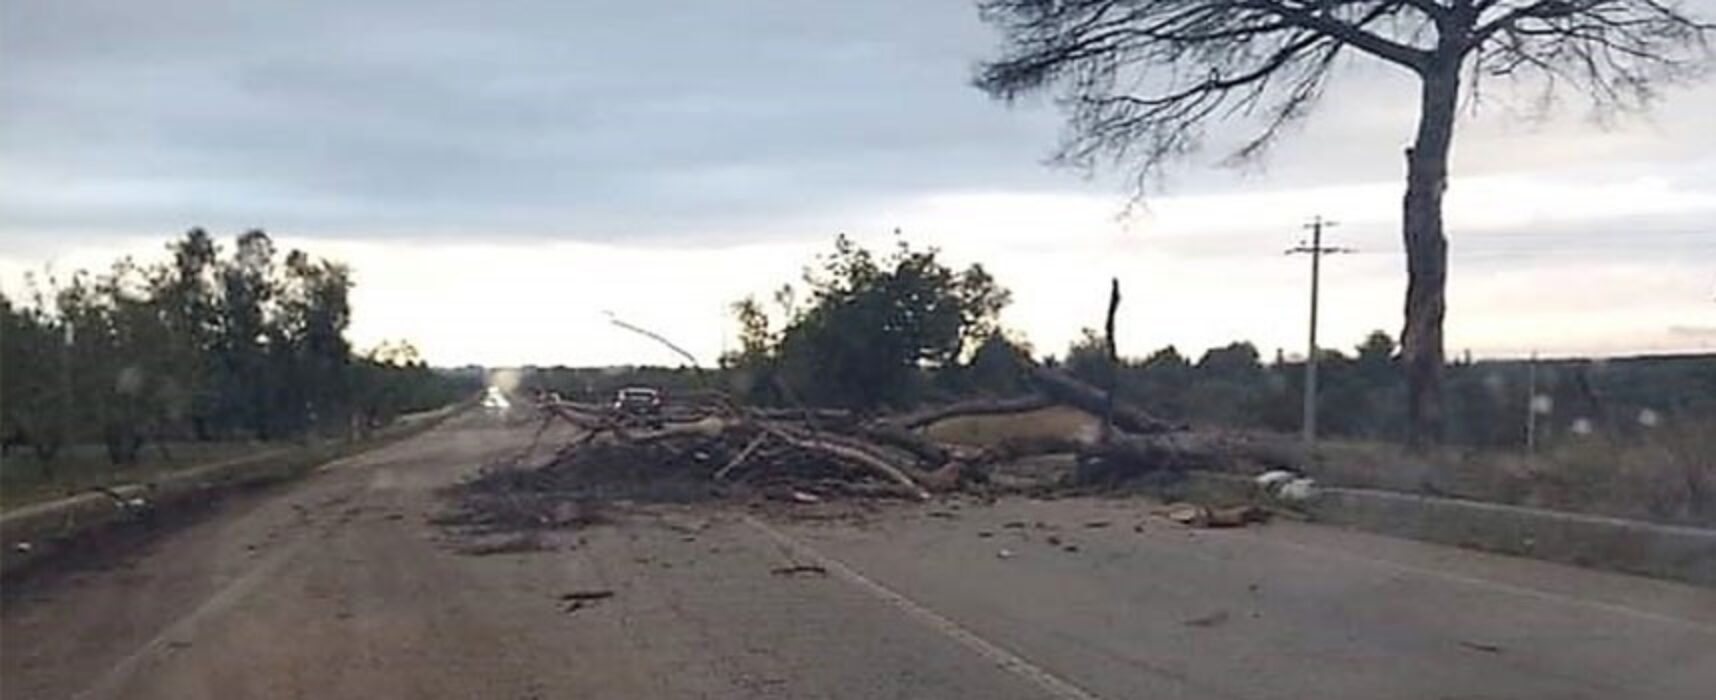 Maltempo, Bisceglie: cade albero su strada provinciale 85, intervengono Vigili del Fuoco